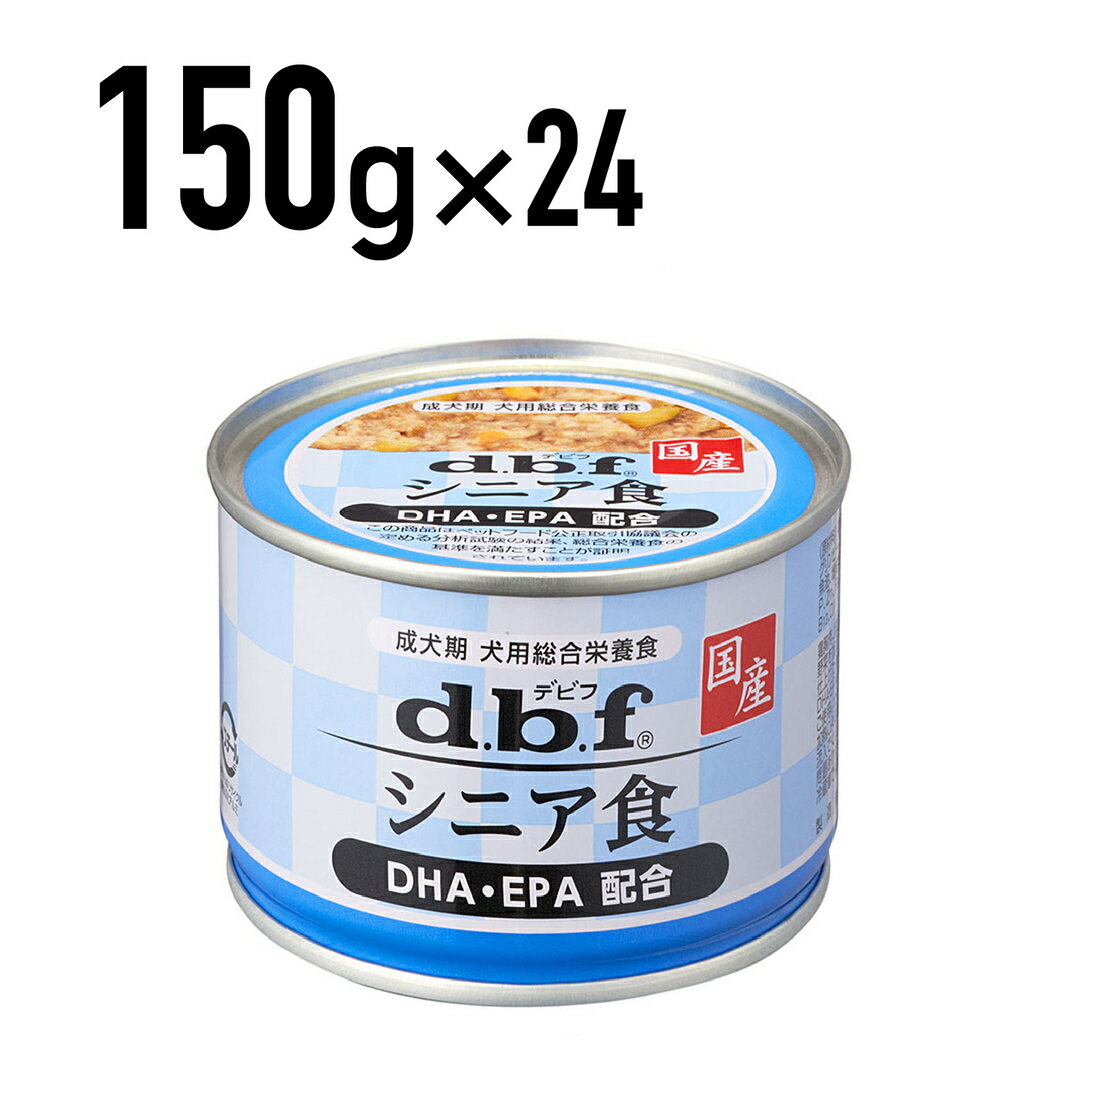 デビフ 国産【シニア食 DHA・EPA配合】150g×24缶セット [1525]≪4970501033646≫
ITEMPRICE